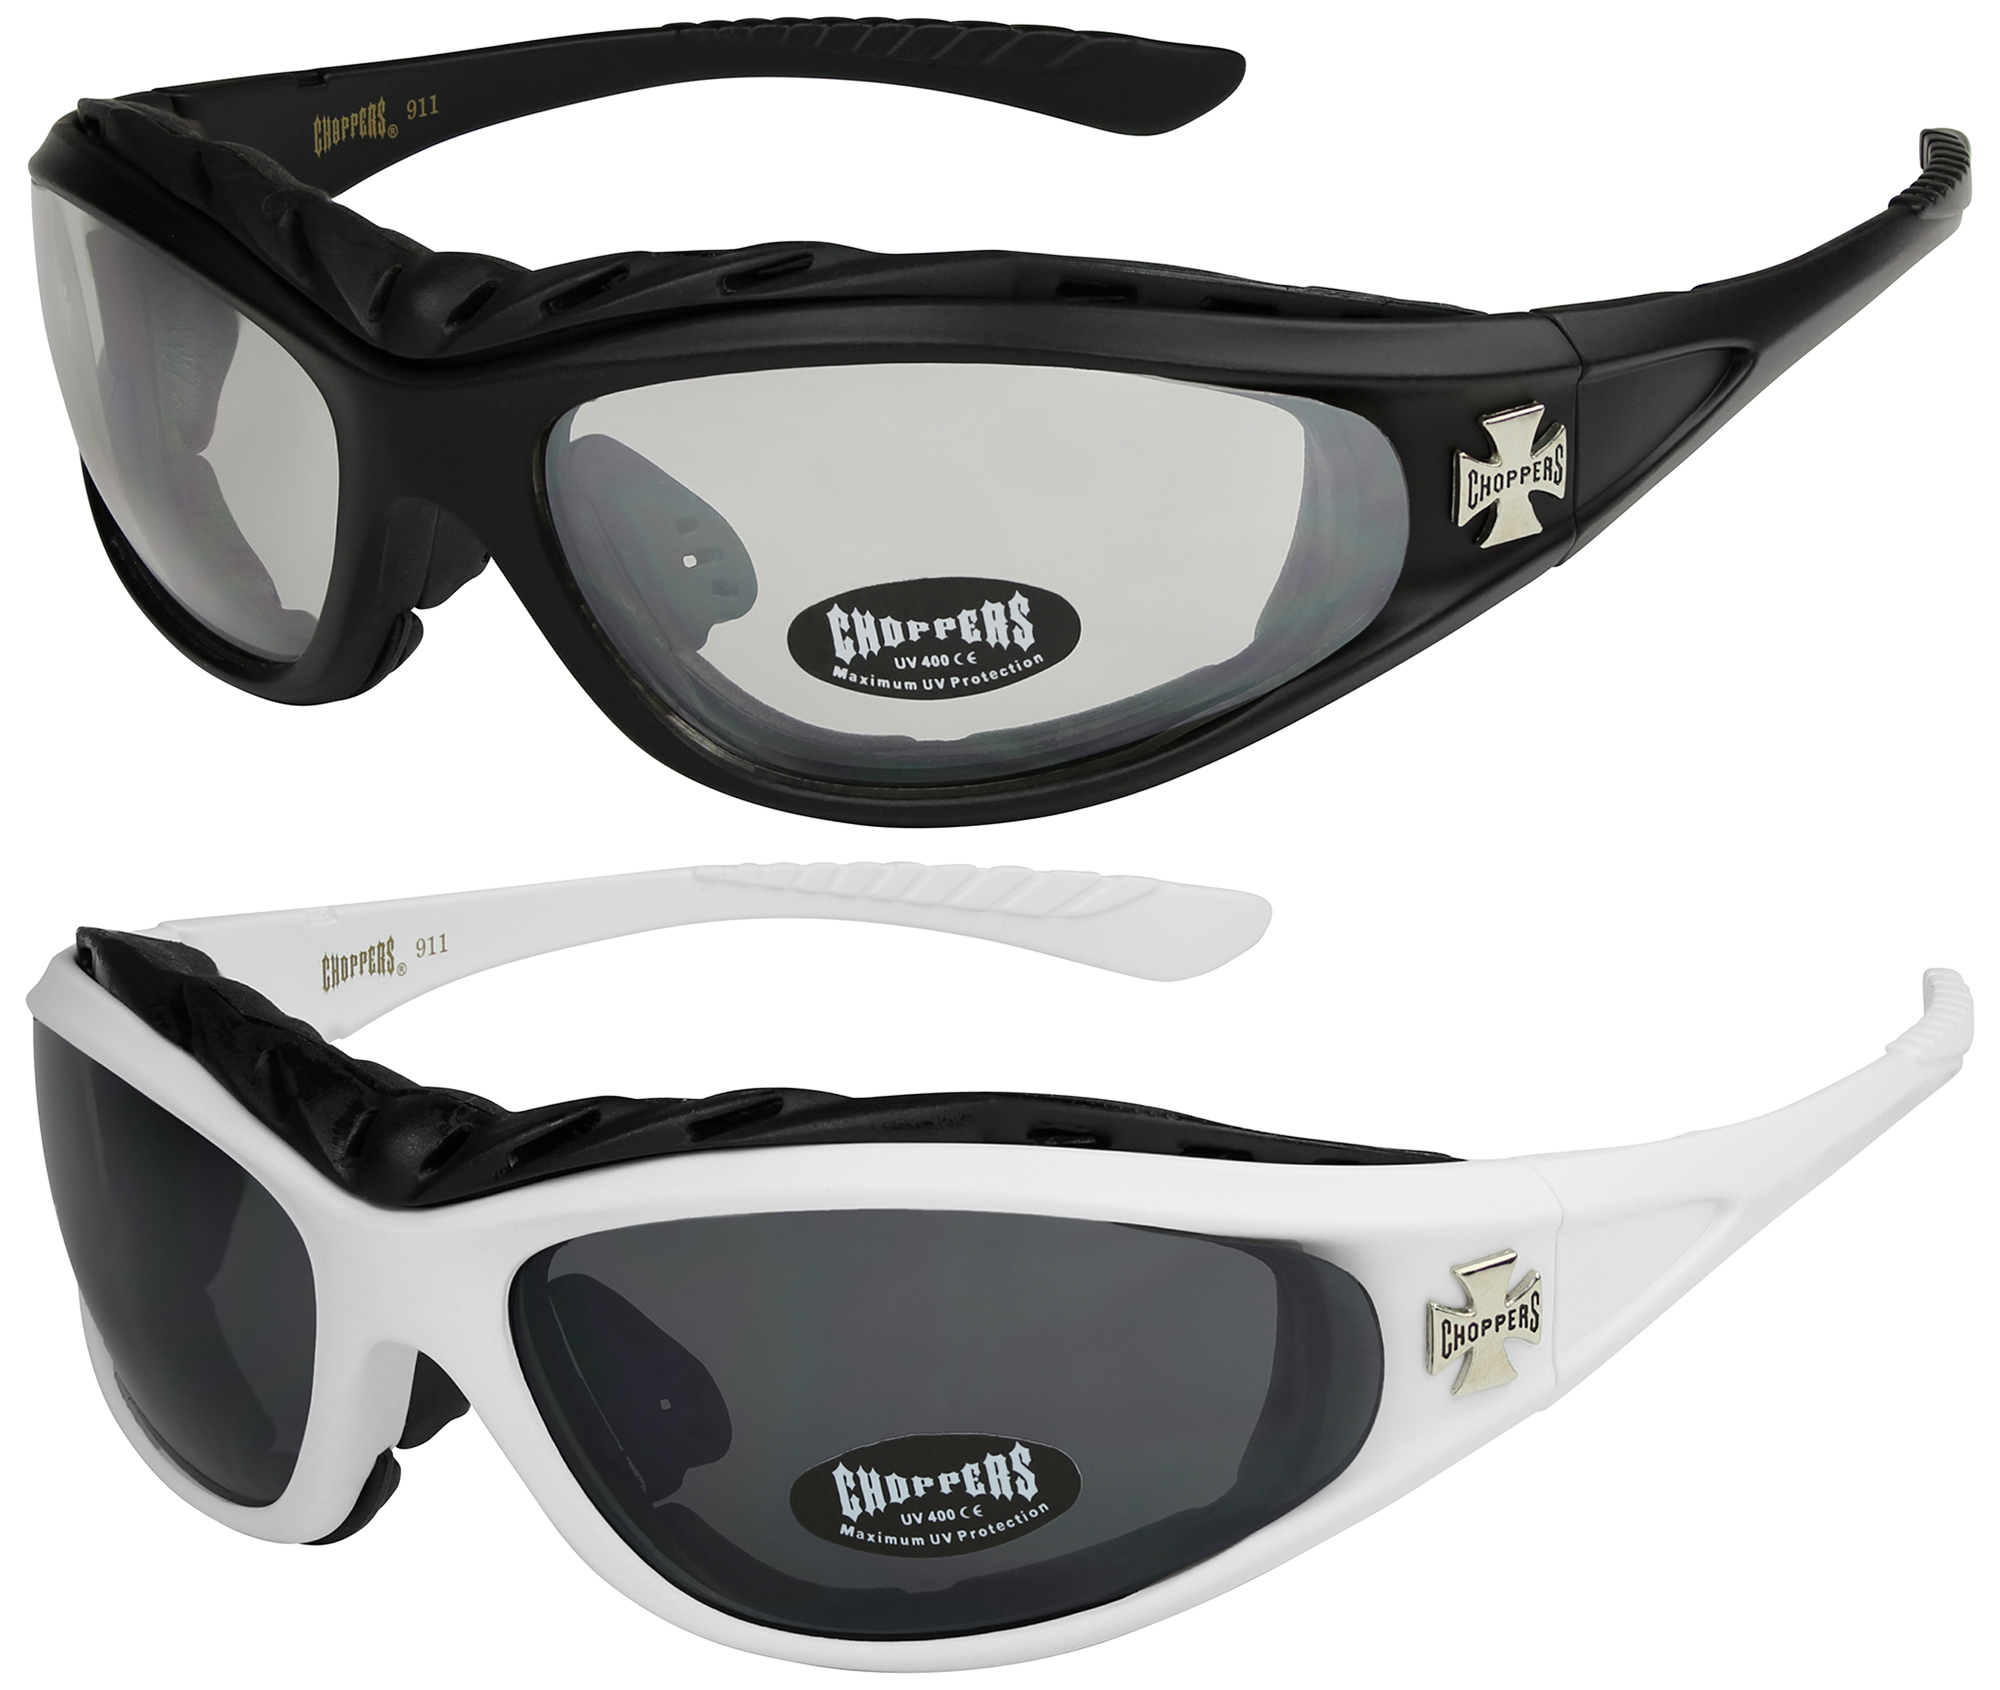 2er Pack Choppers 911 Locs Rad Brille Sonnenbrille Männer Frauen schwarz silber 